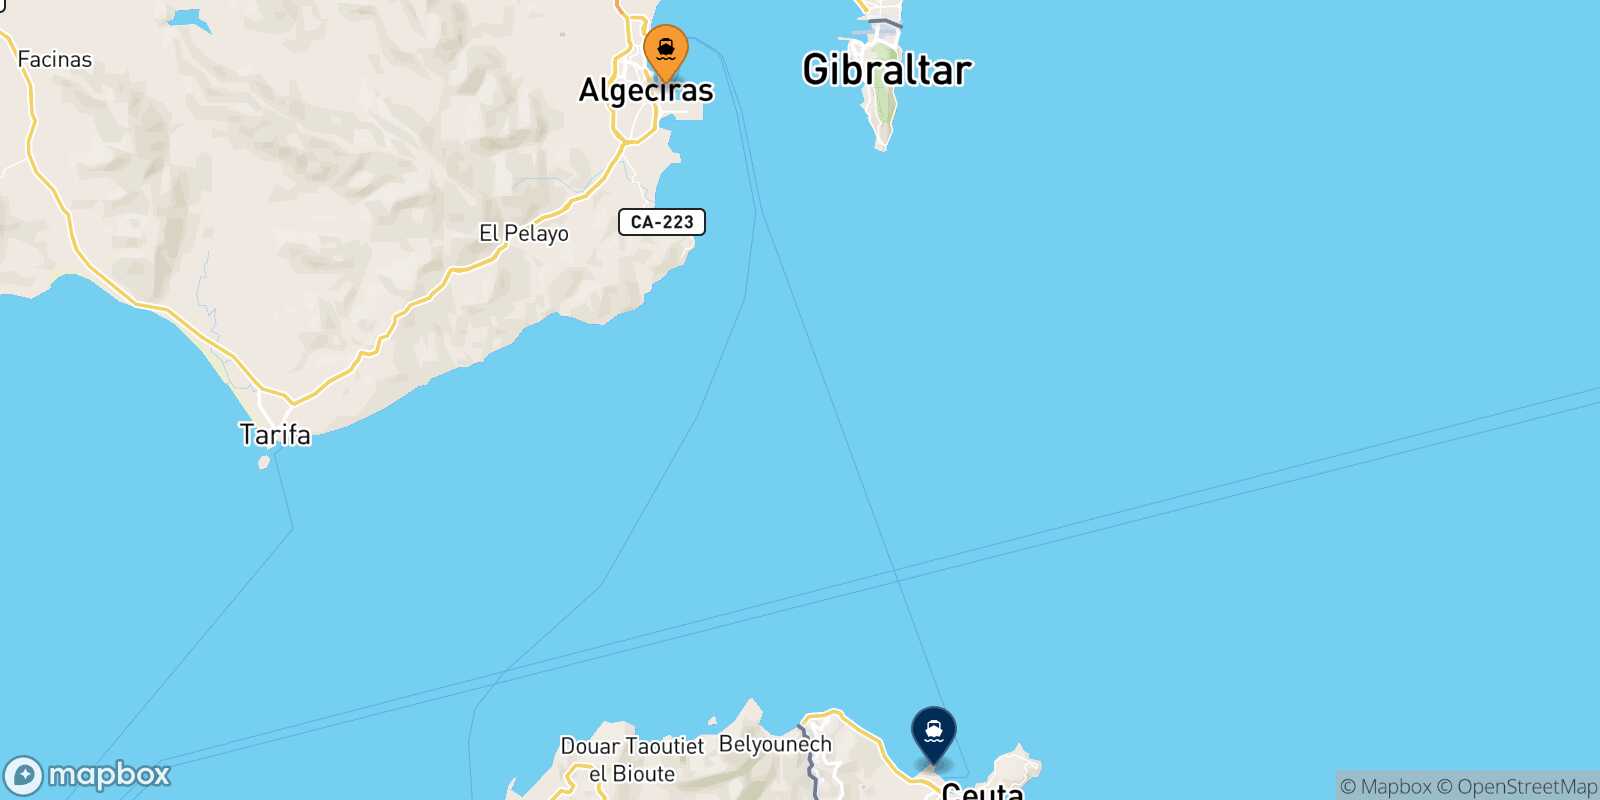 Mappa delle destinazioni raggiungibili da Algeciras